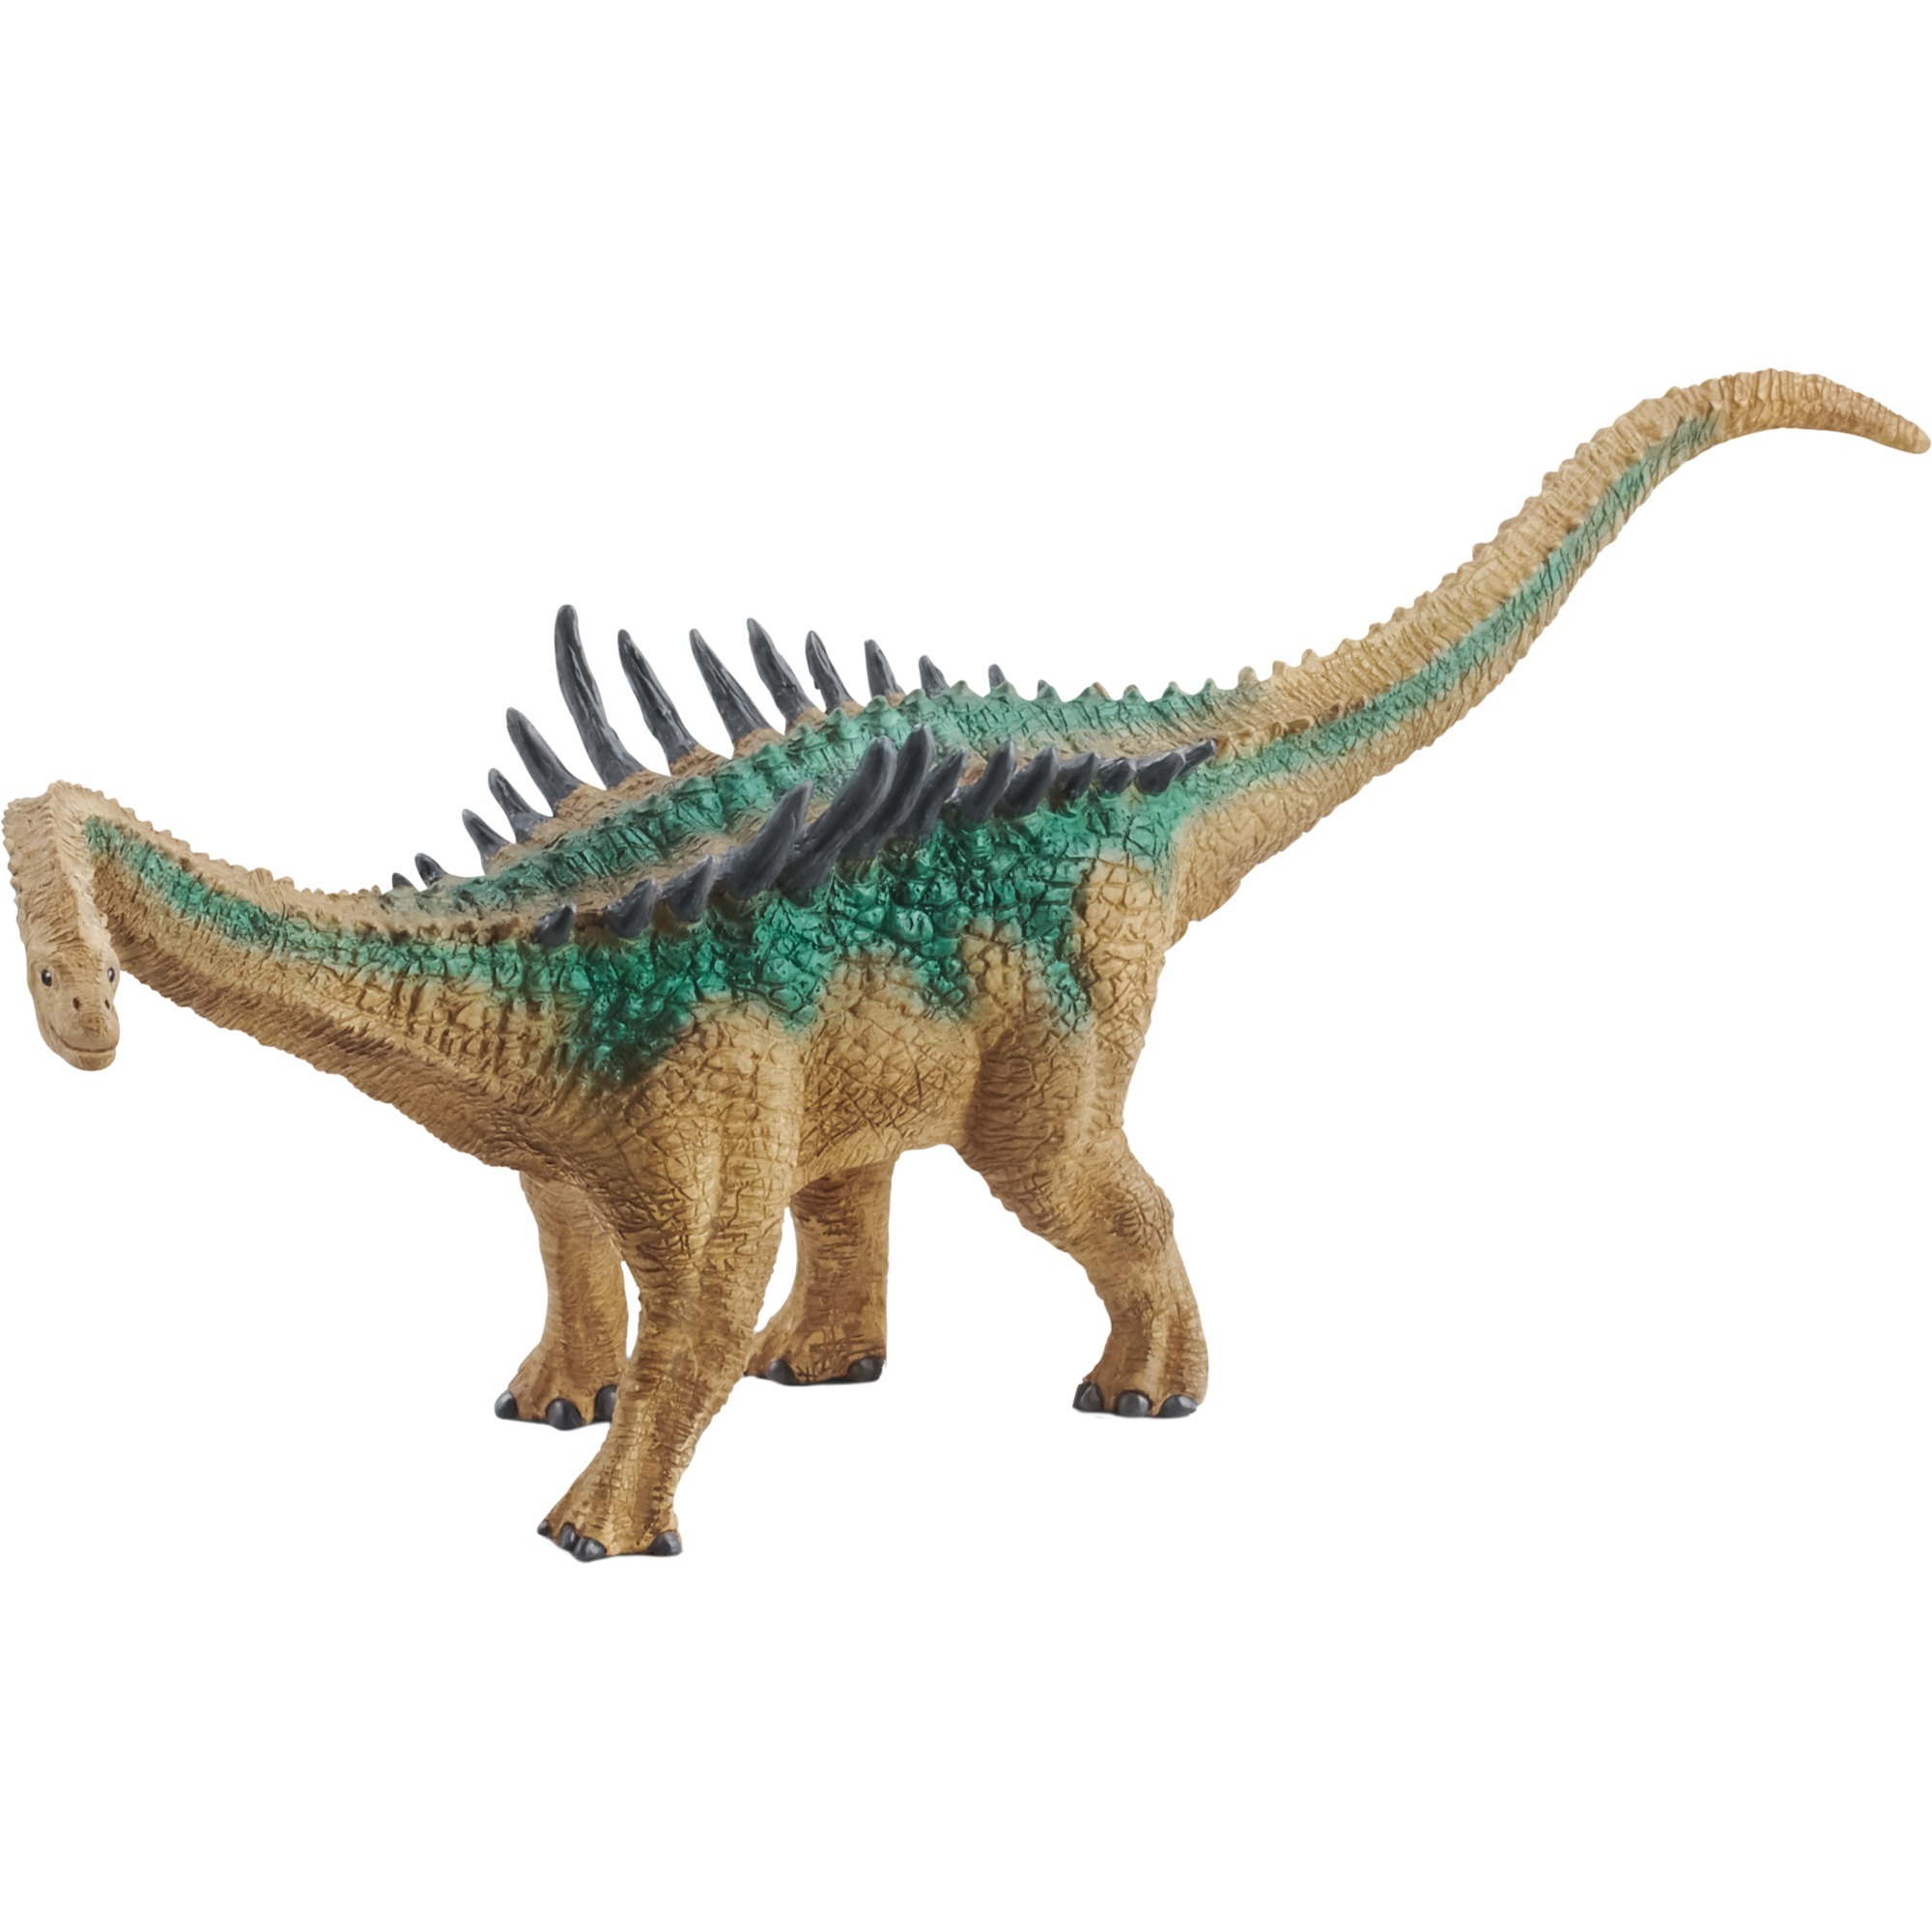 Image of Alternate - Dinosaurs Agustinia, Spielfigur online einkaufen bei Alternate